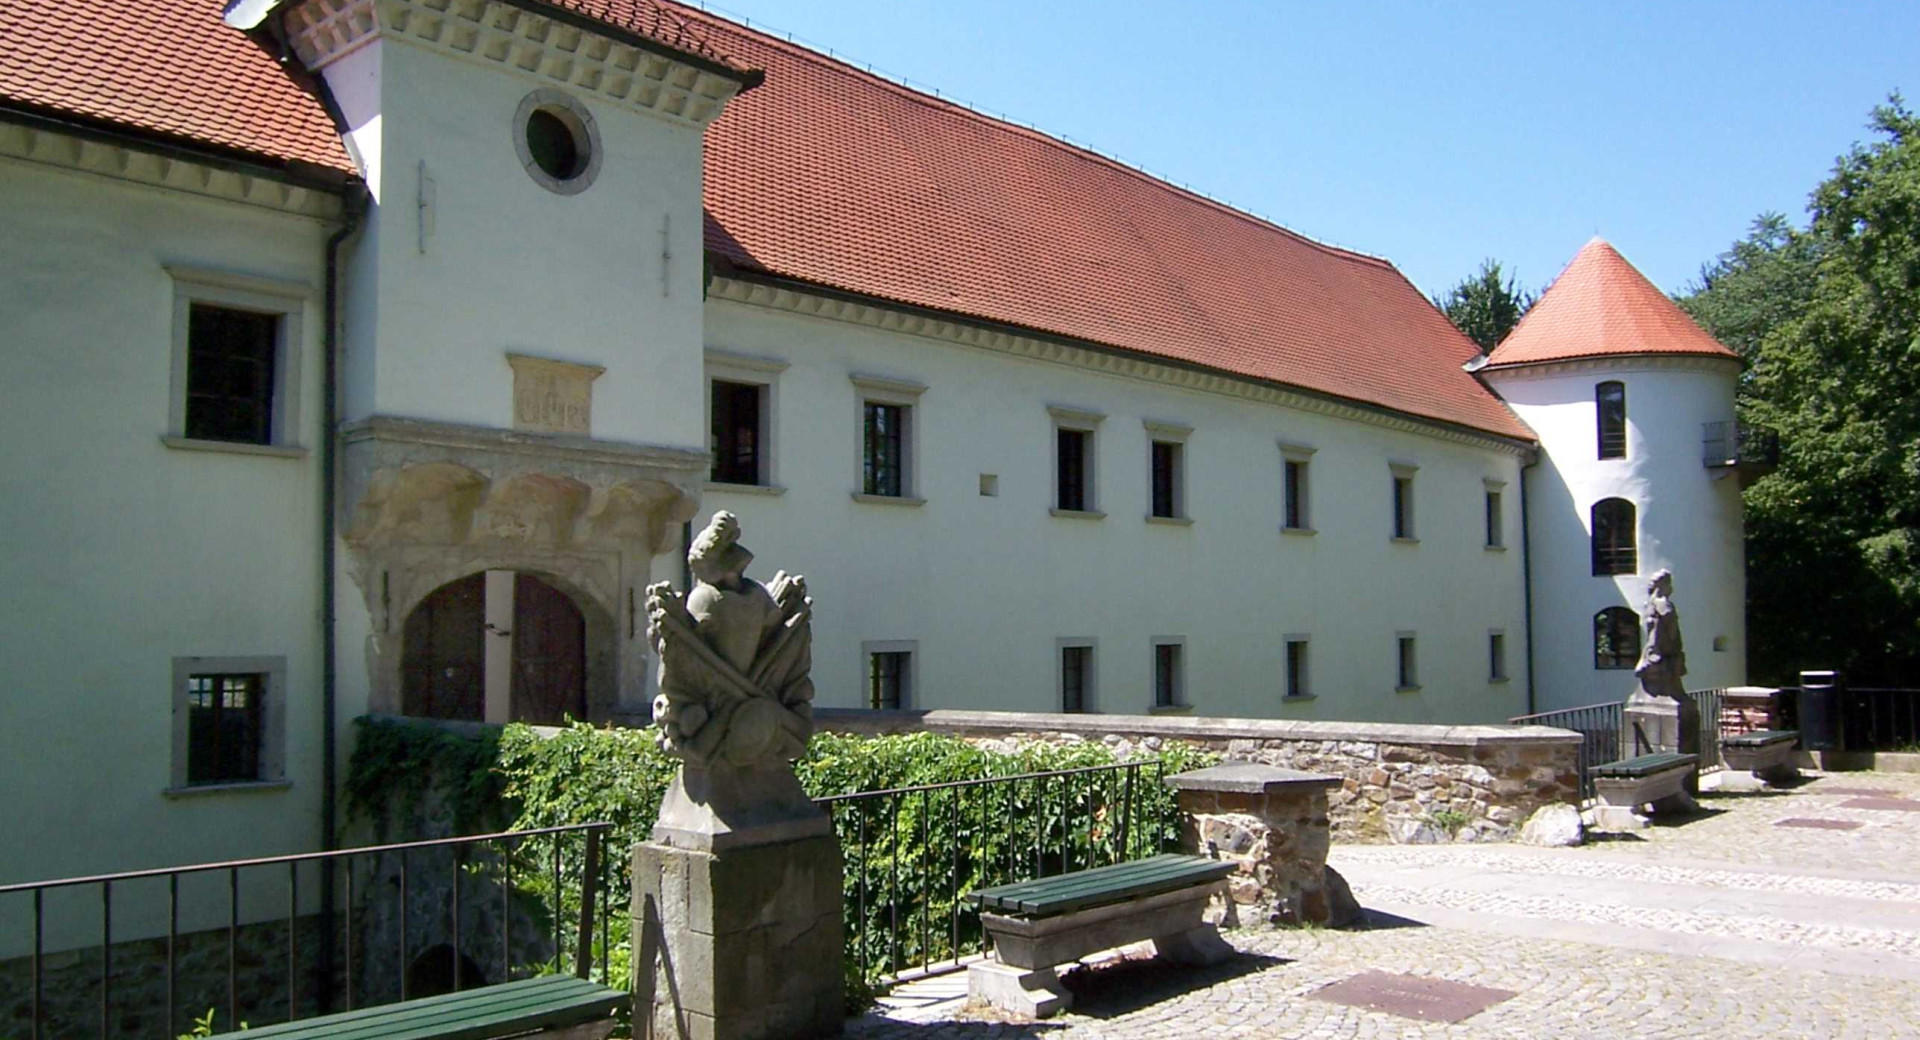 Vhod v grad Fužine, kjer se nahaja Muzej za arhitekturo in oblikovanje